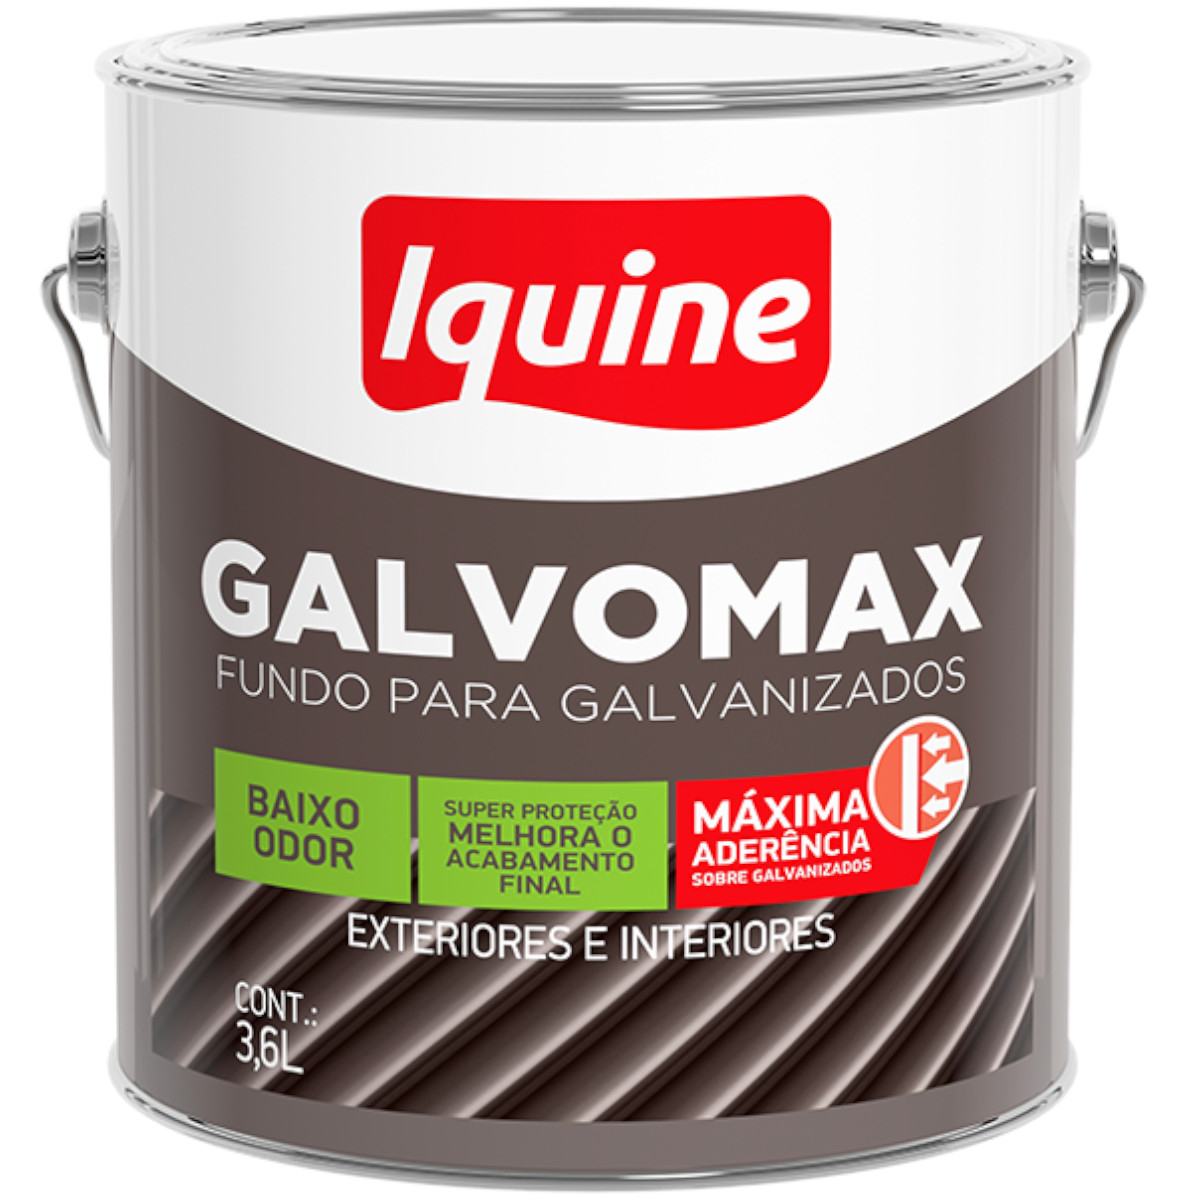 Primer Galvomax Fundo para Galvanizados 3,6 litros Iquine